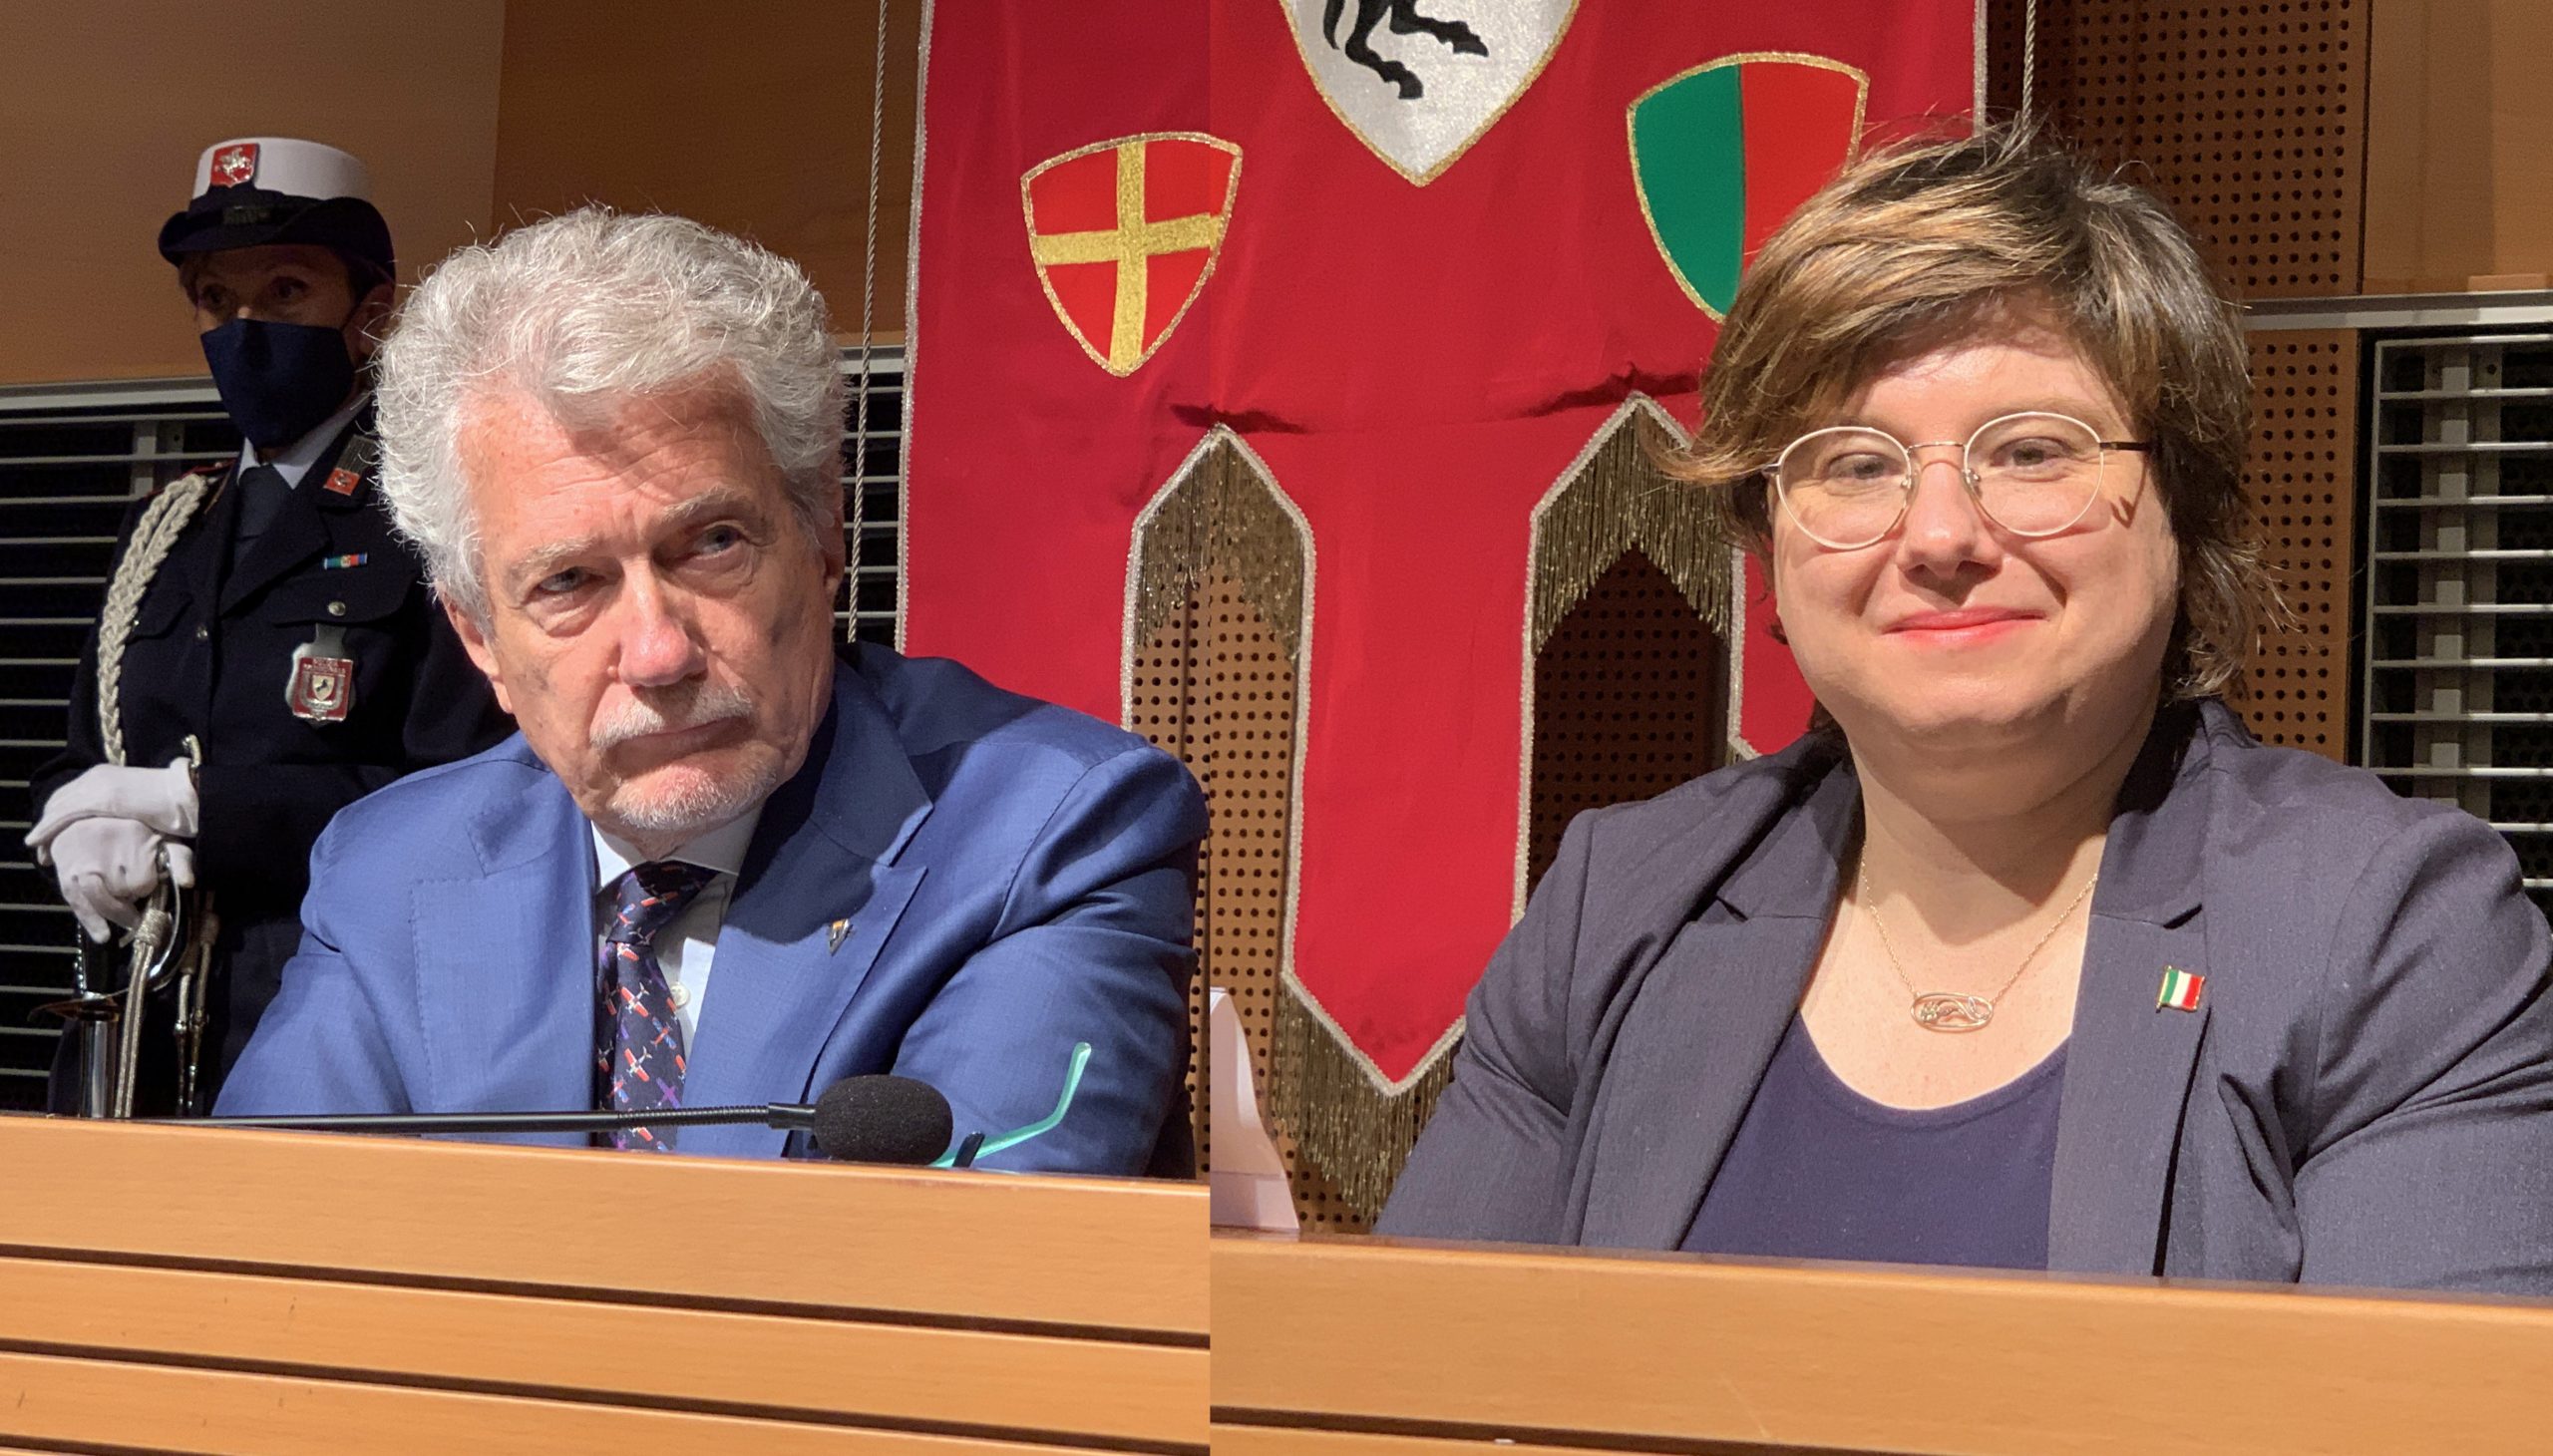 Arezzo: Sindaco e Vicesindaco sotto attacco dei no vax. Ghinelli e Tanti: “Deriva pericolosa”